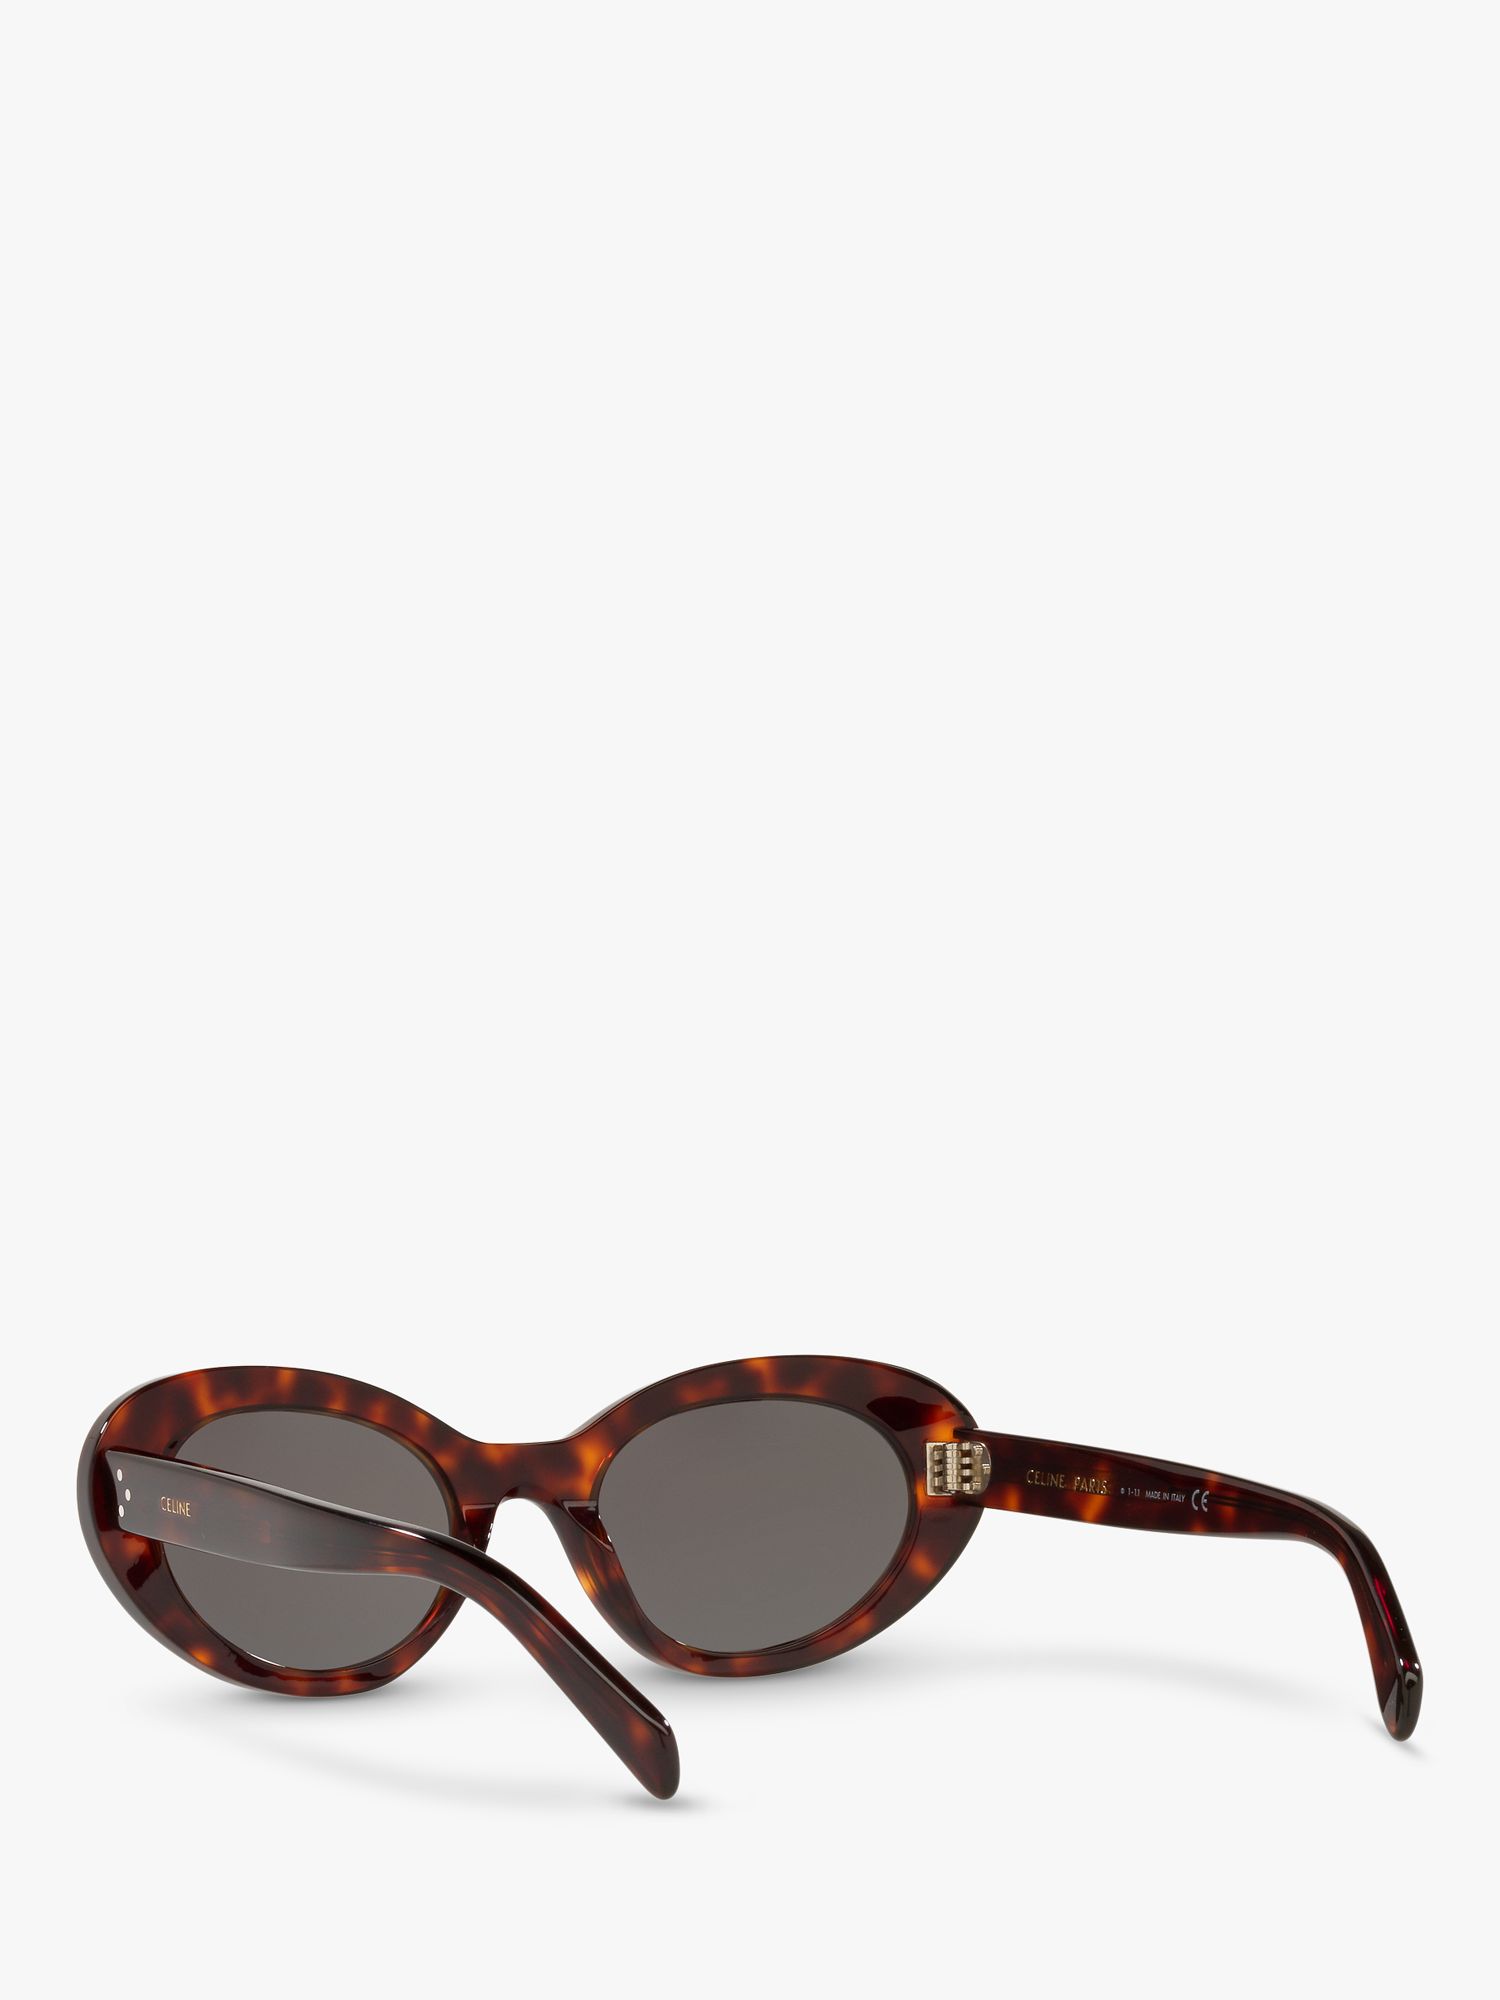 Buy Celine CL40193I Women's Cat's Eye Sunglasses, Black Tortoise/Grey Online at johnlewis.com